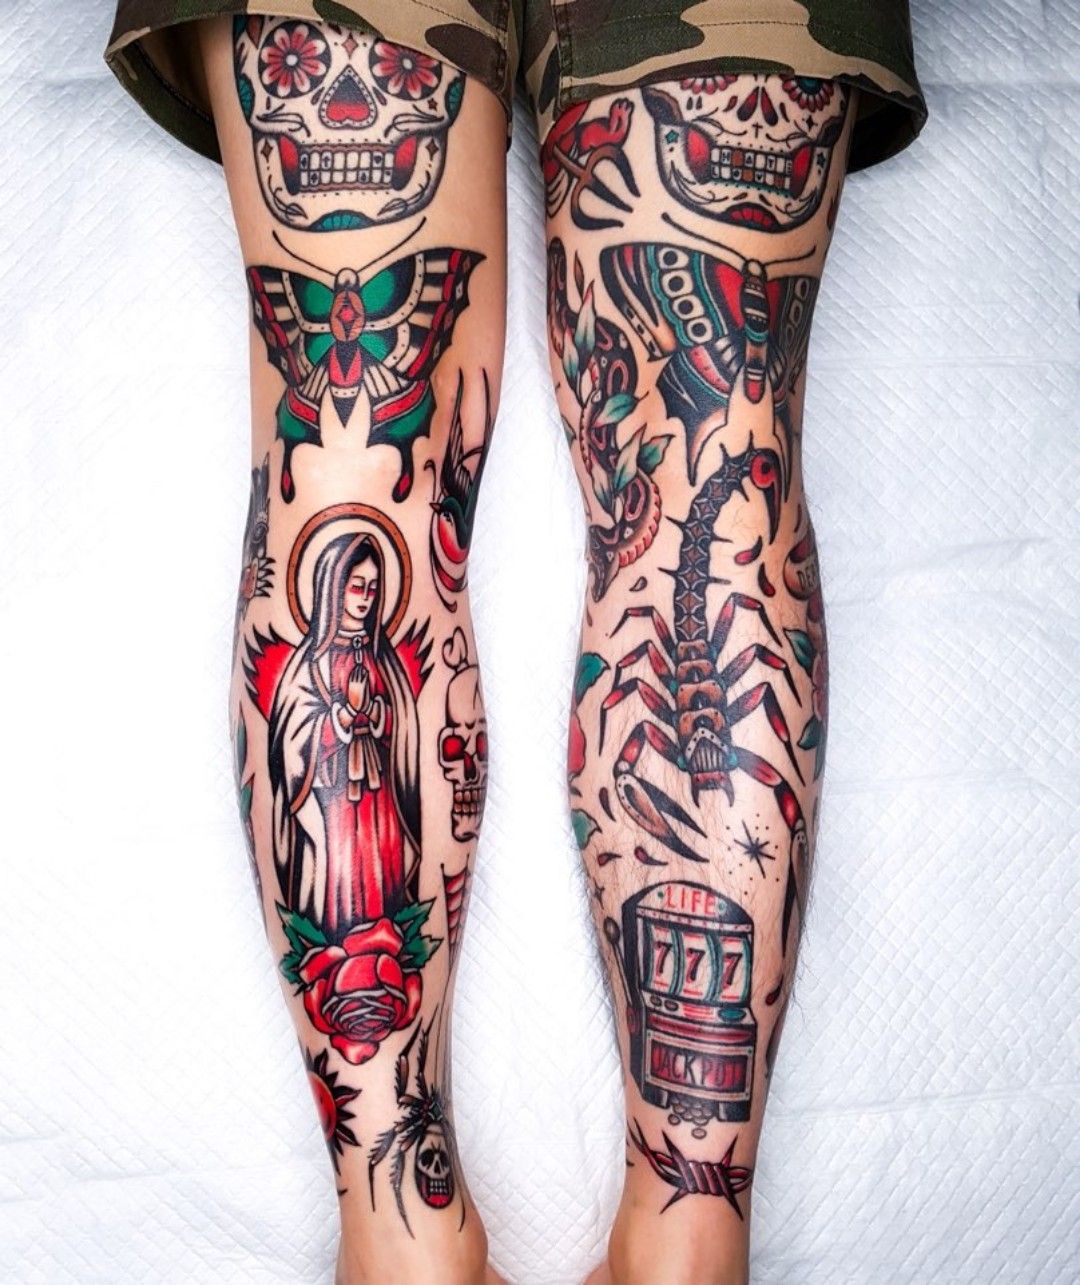 Tattoo uploaded by hudini • leg sleeves #legsleevetattoo #legsleeve #올드스쿨긴다리  #긴다리타투 #legtattoo #traditionaltattoo #oldschooltattoo • Tattoodo